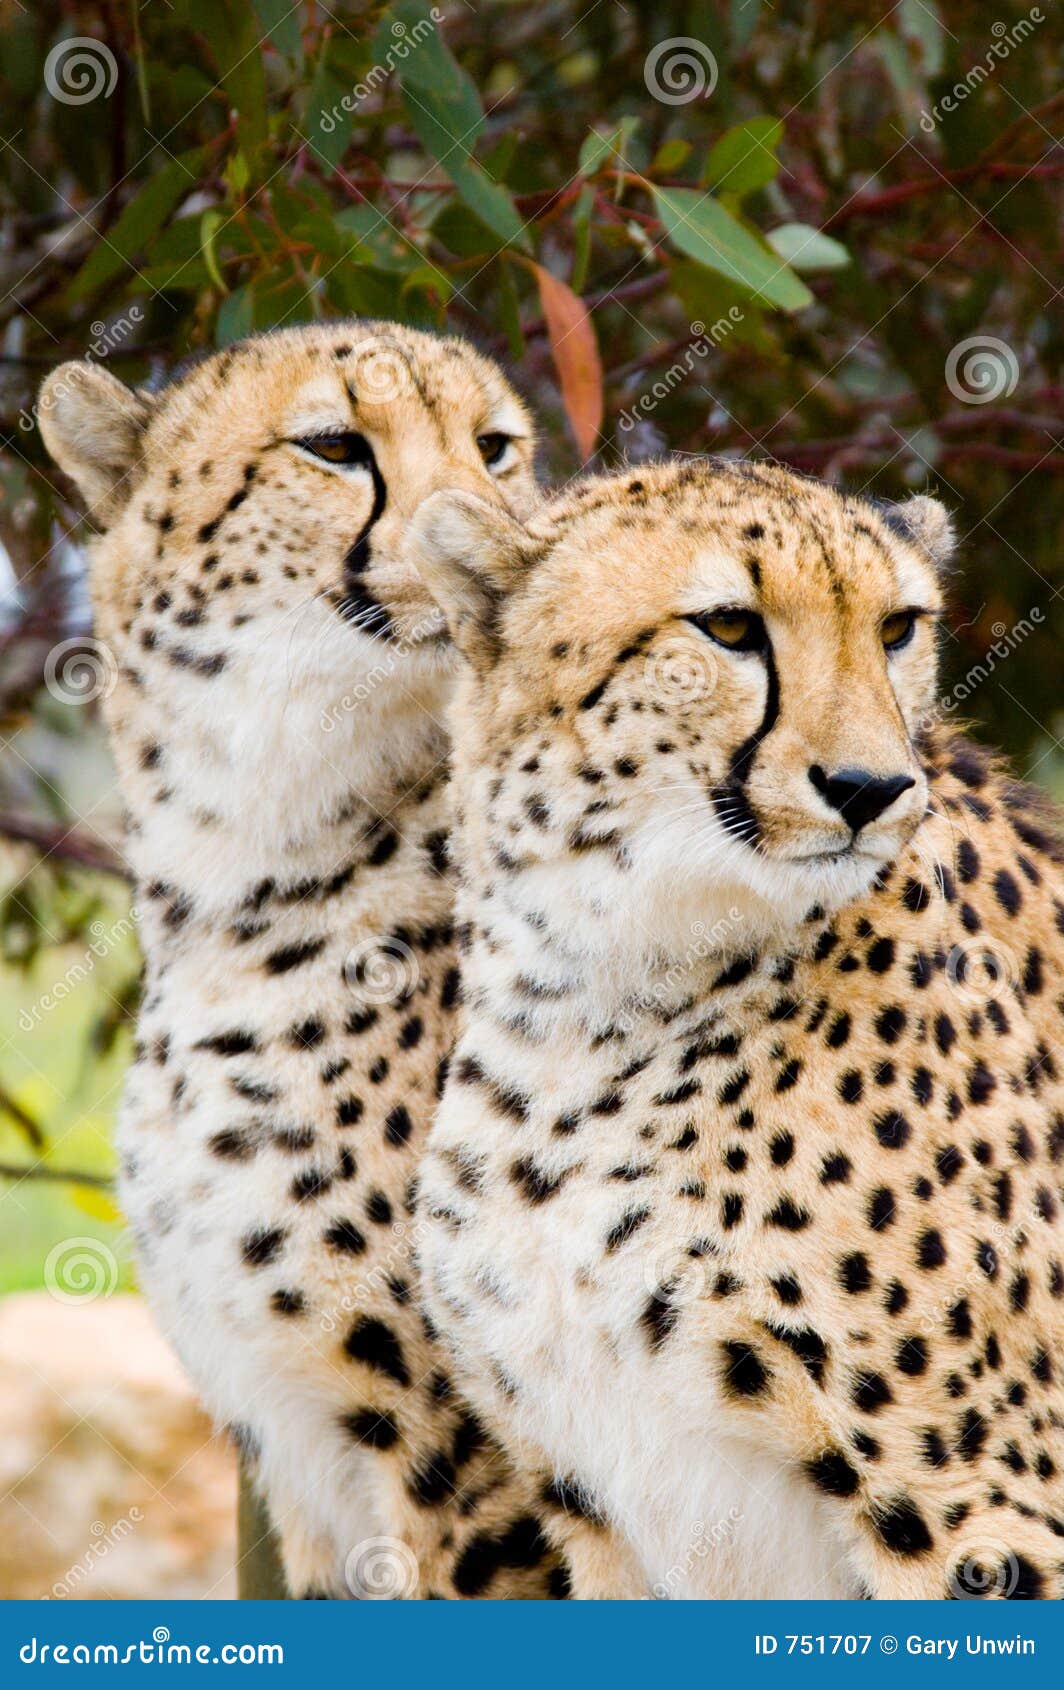 two male cheetahs